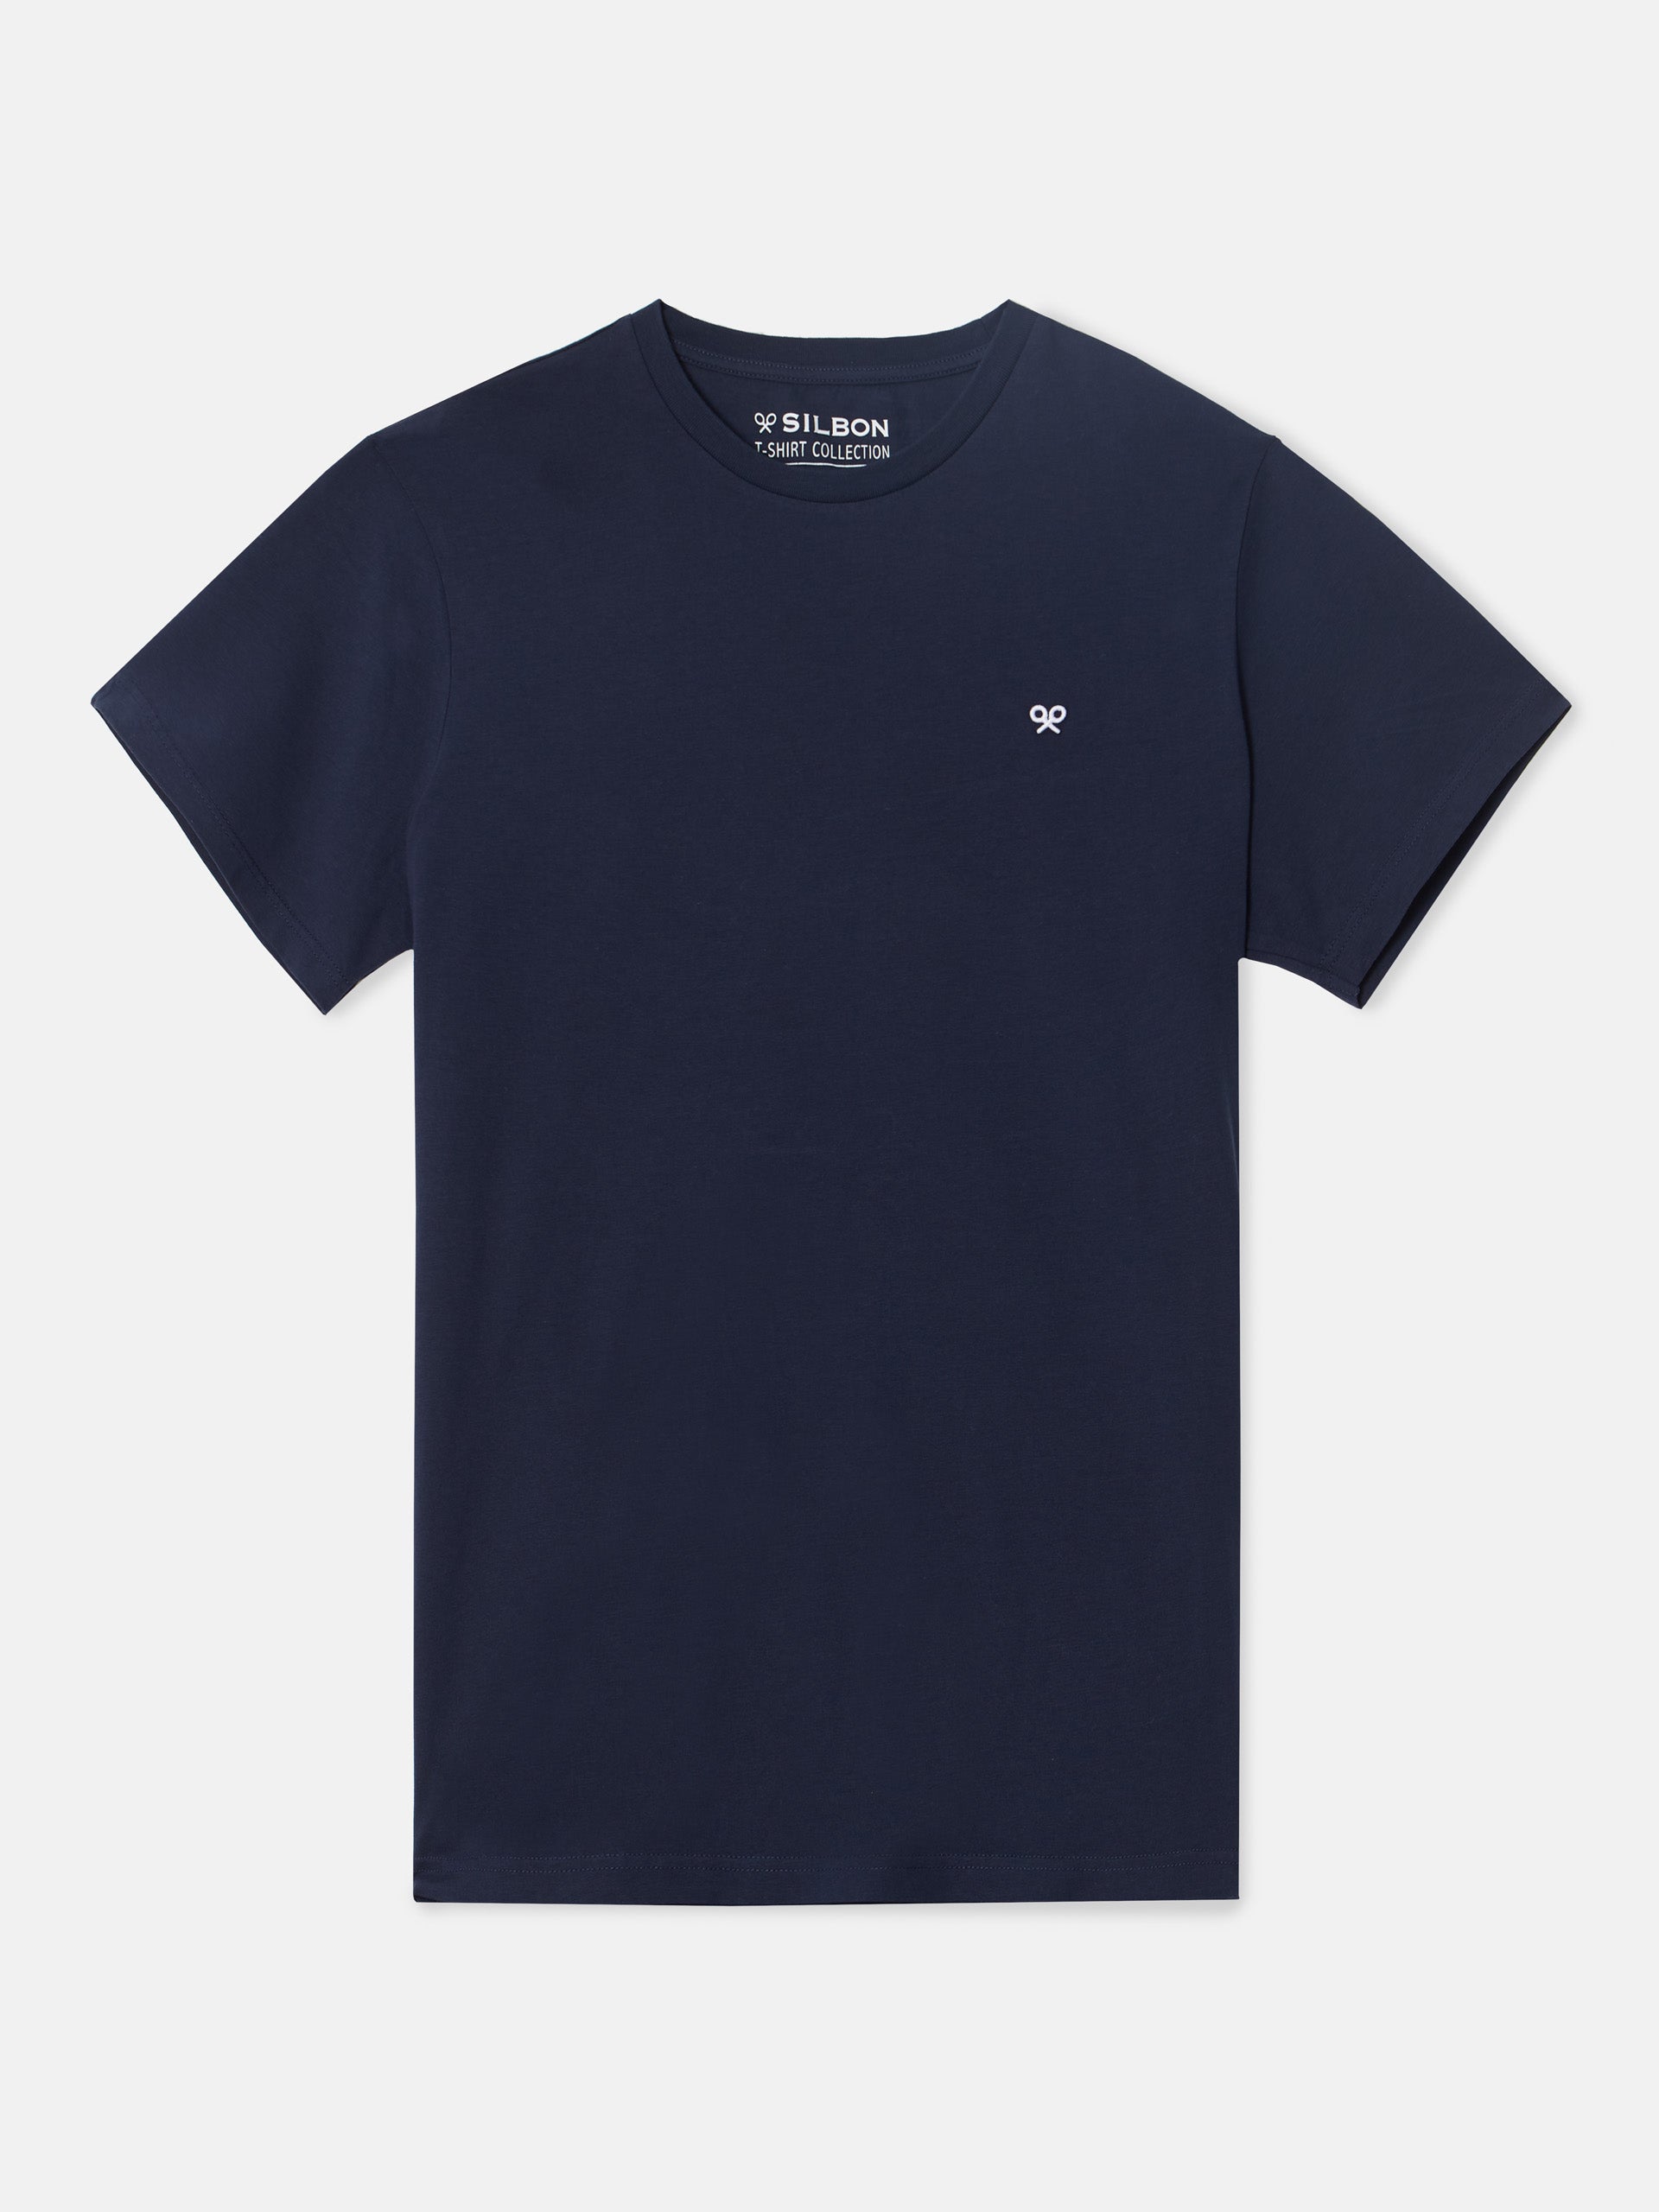 Camiseta big ski azul marino